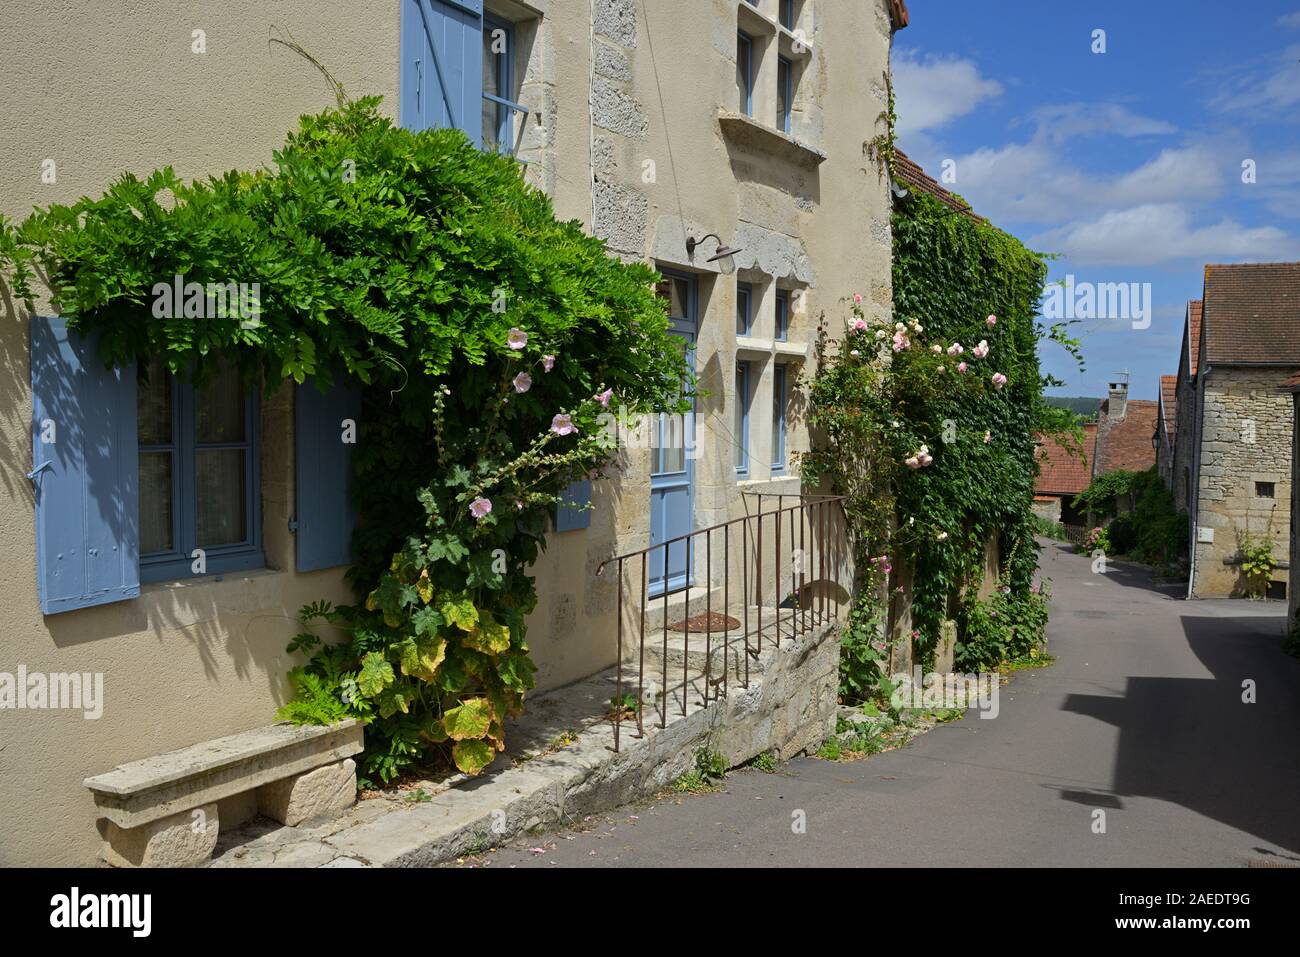 The picturesque village of Flavigny sur Ozerain, Cote d'Or FR Stock Photo